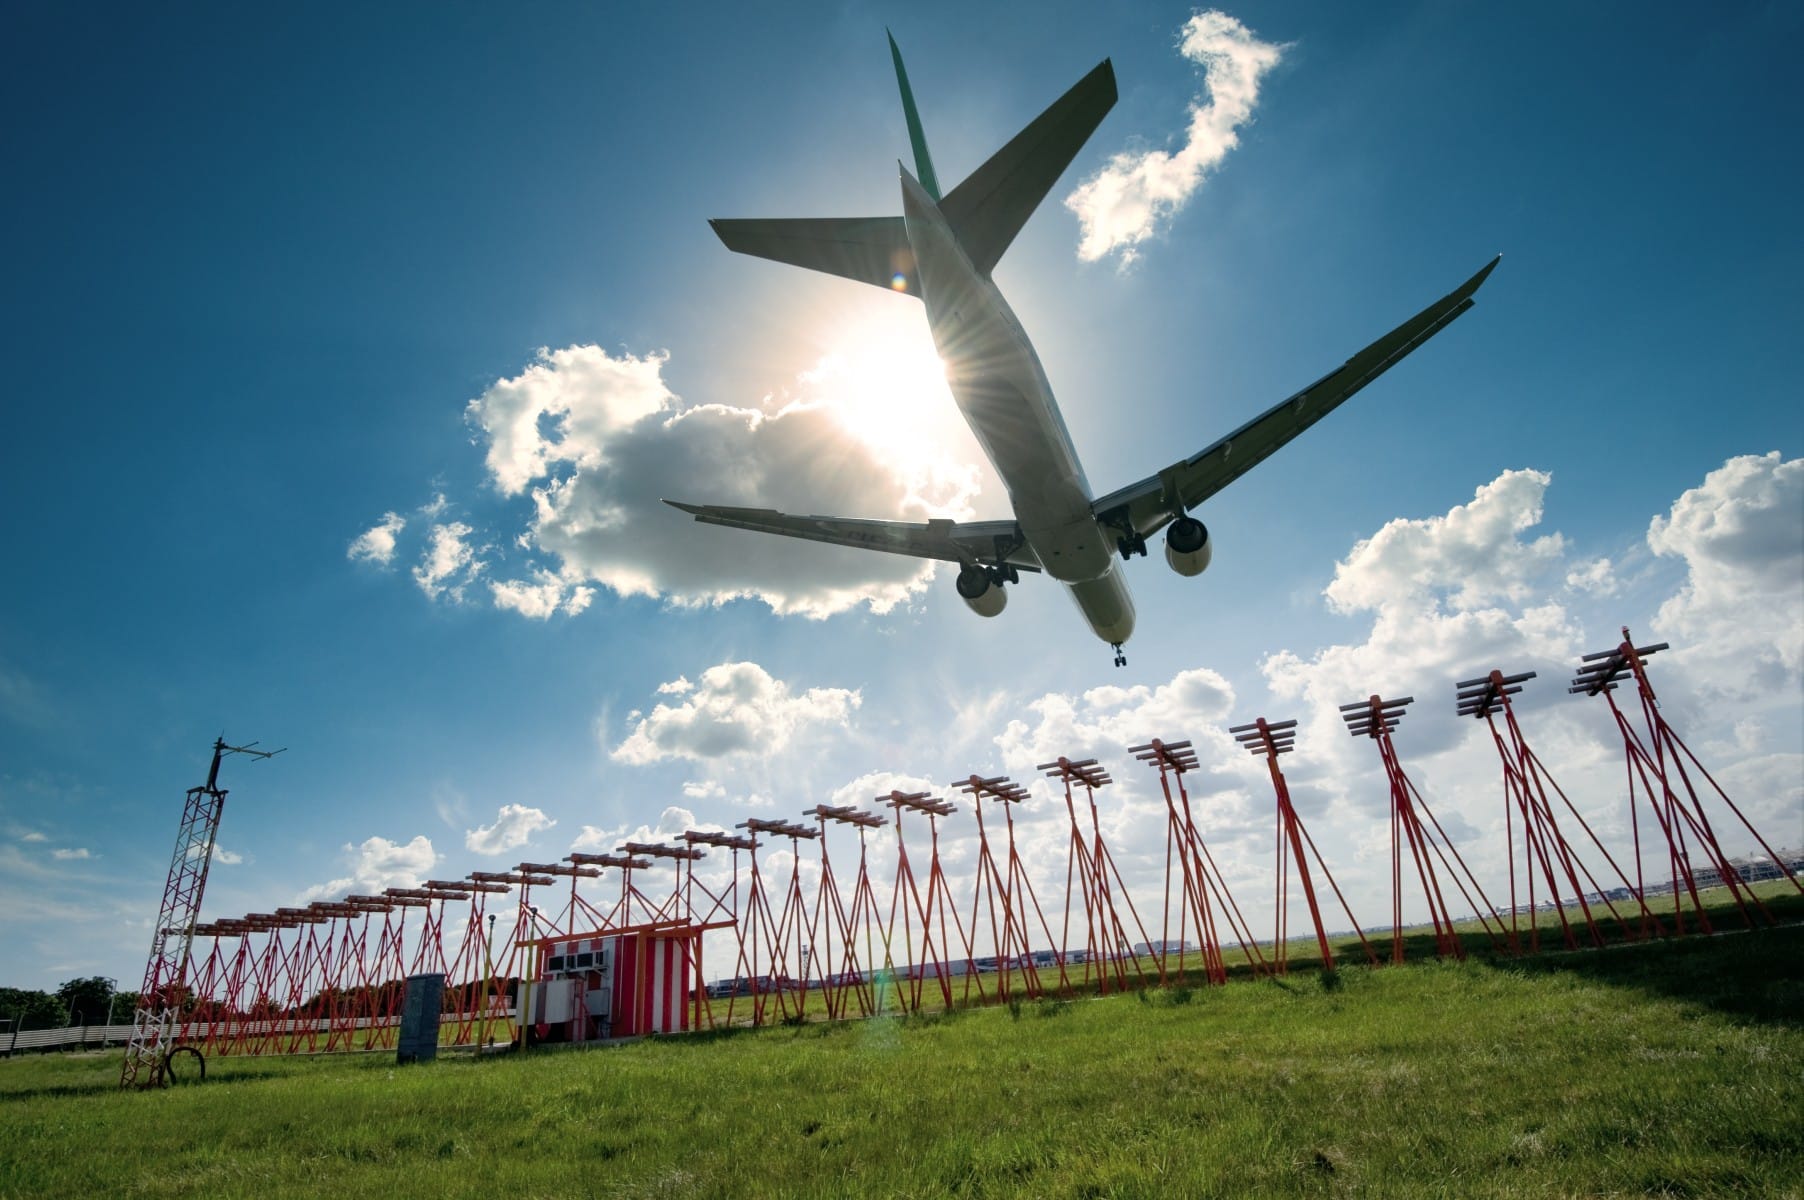 Heathrow Aeropuerto Londres Emisiones Carbono Aviacion Neutral Cambio Climatico Sostenibilidad Viajes Avion